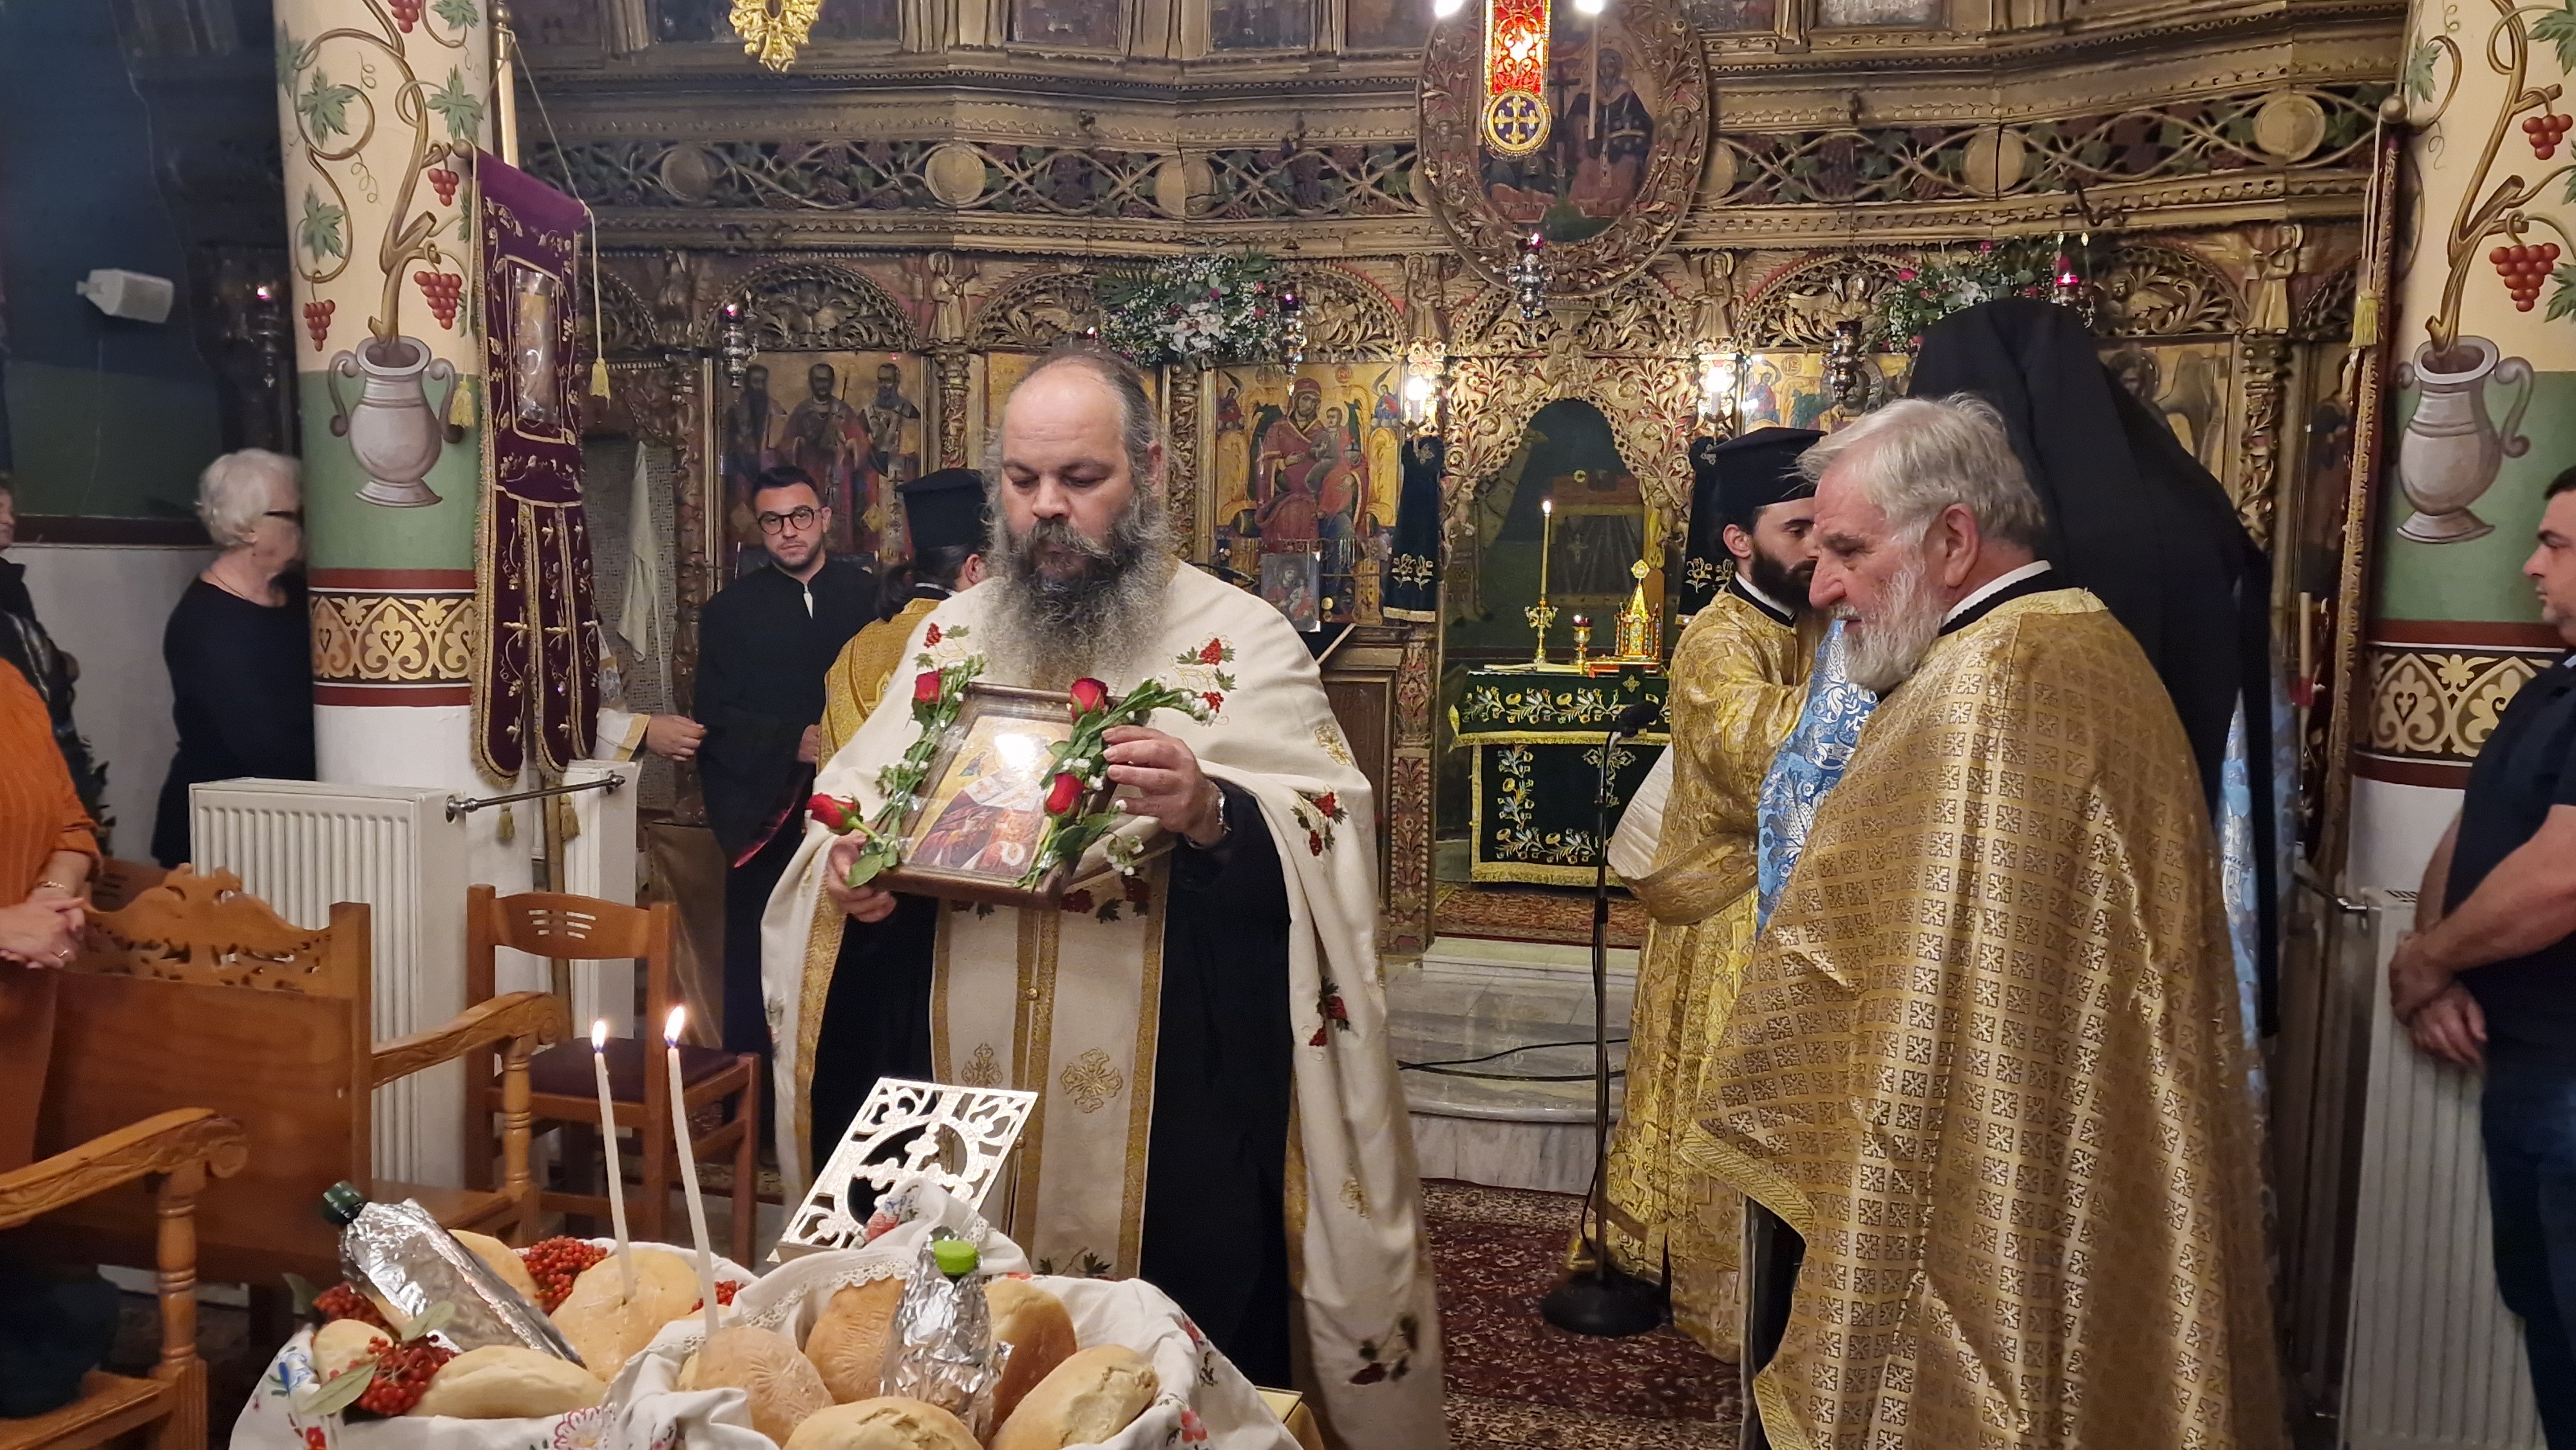 Σαρακηνοί Αλμωπίας: Λαμπρός εορτασμός για τον Άγιο Νικόλαο